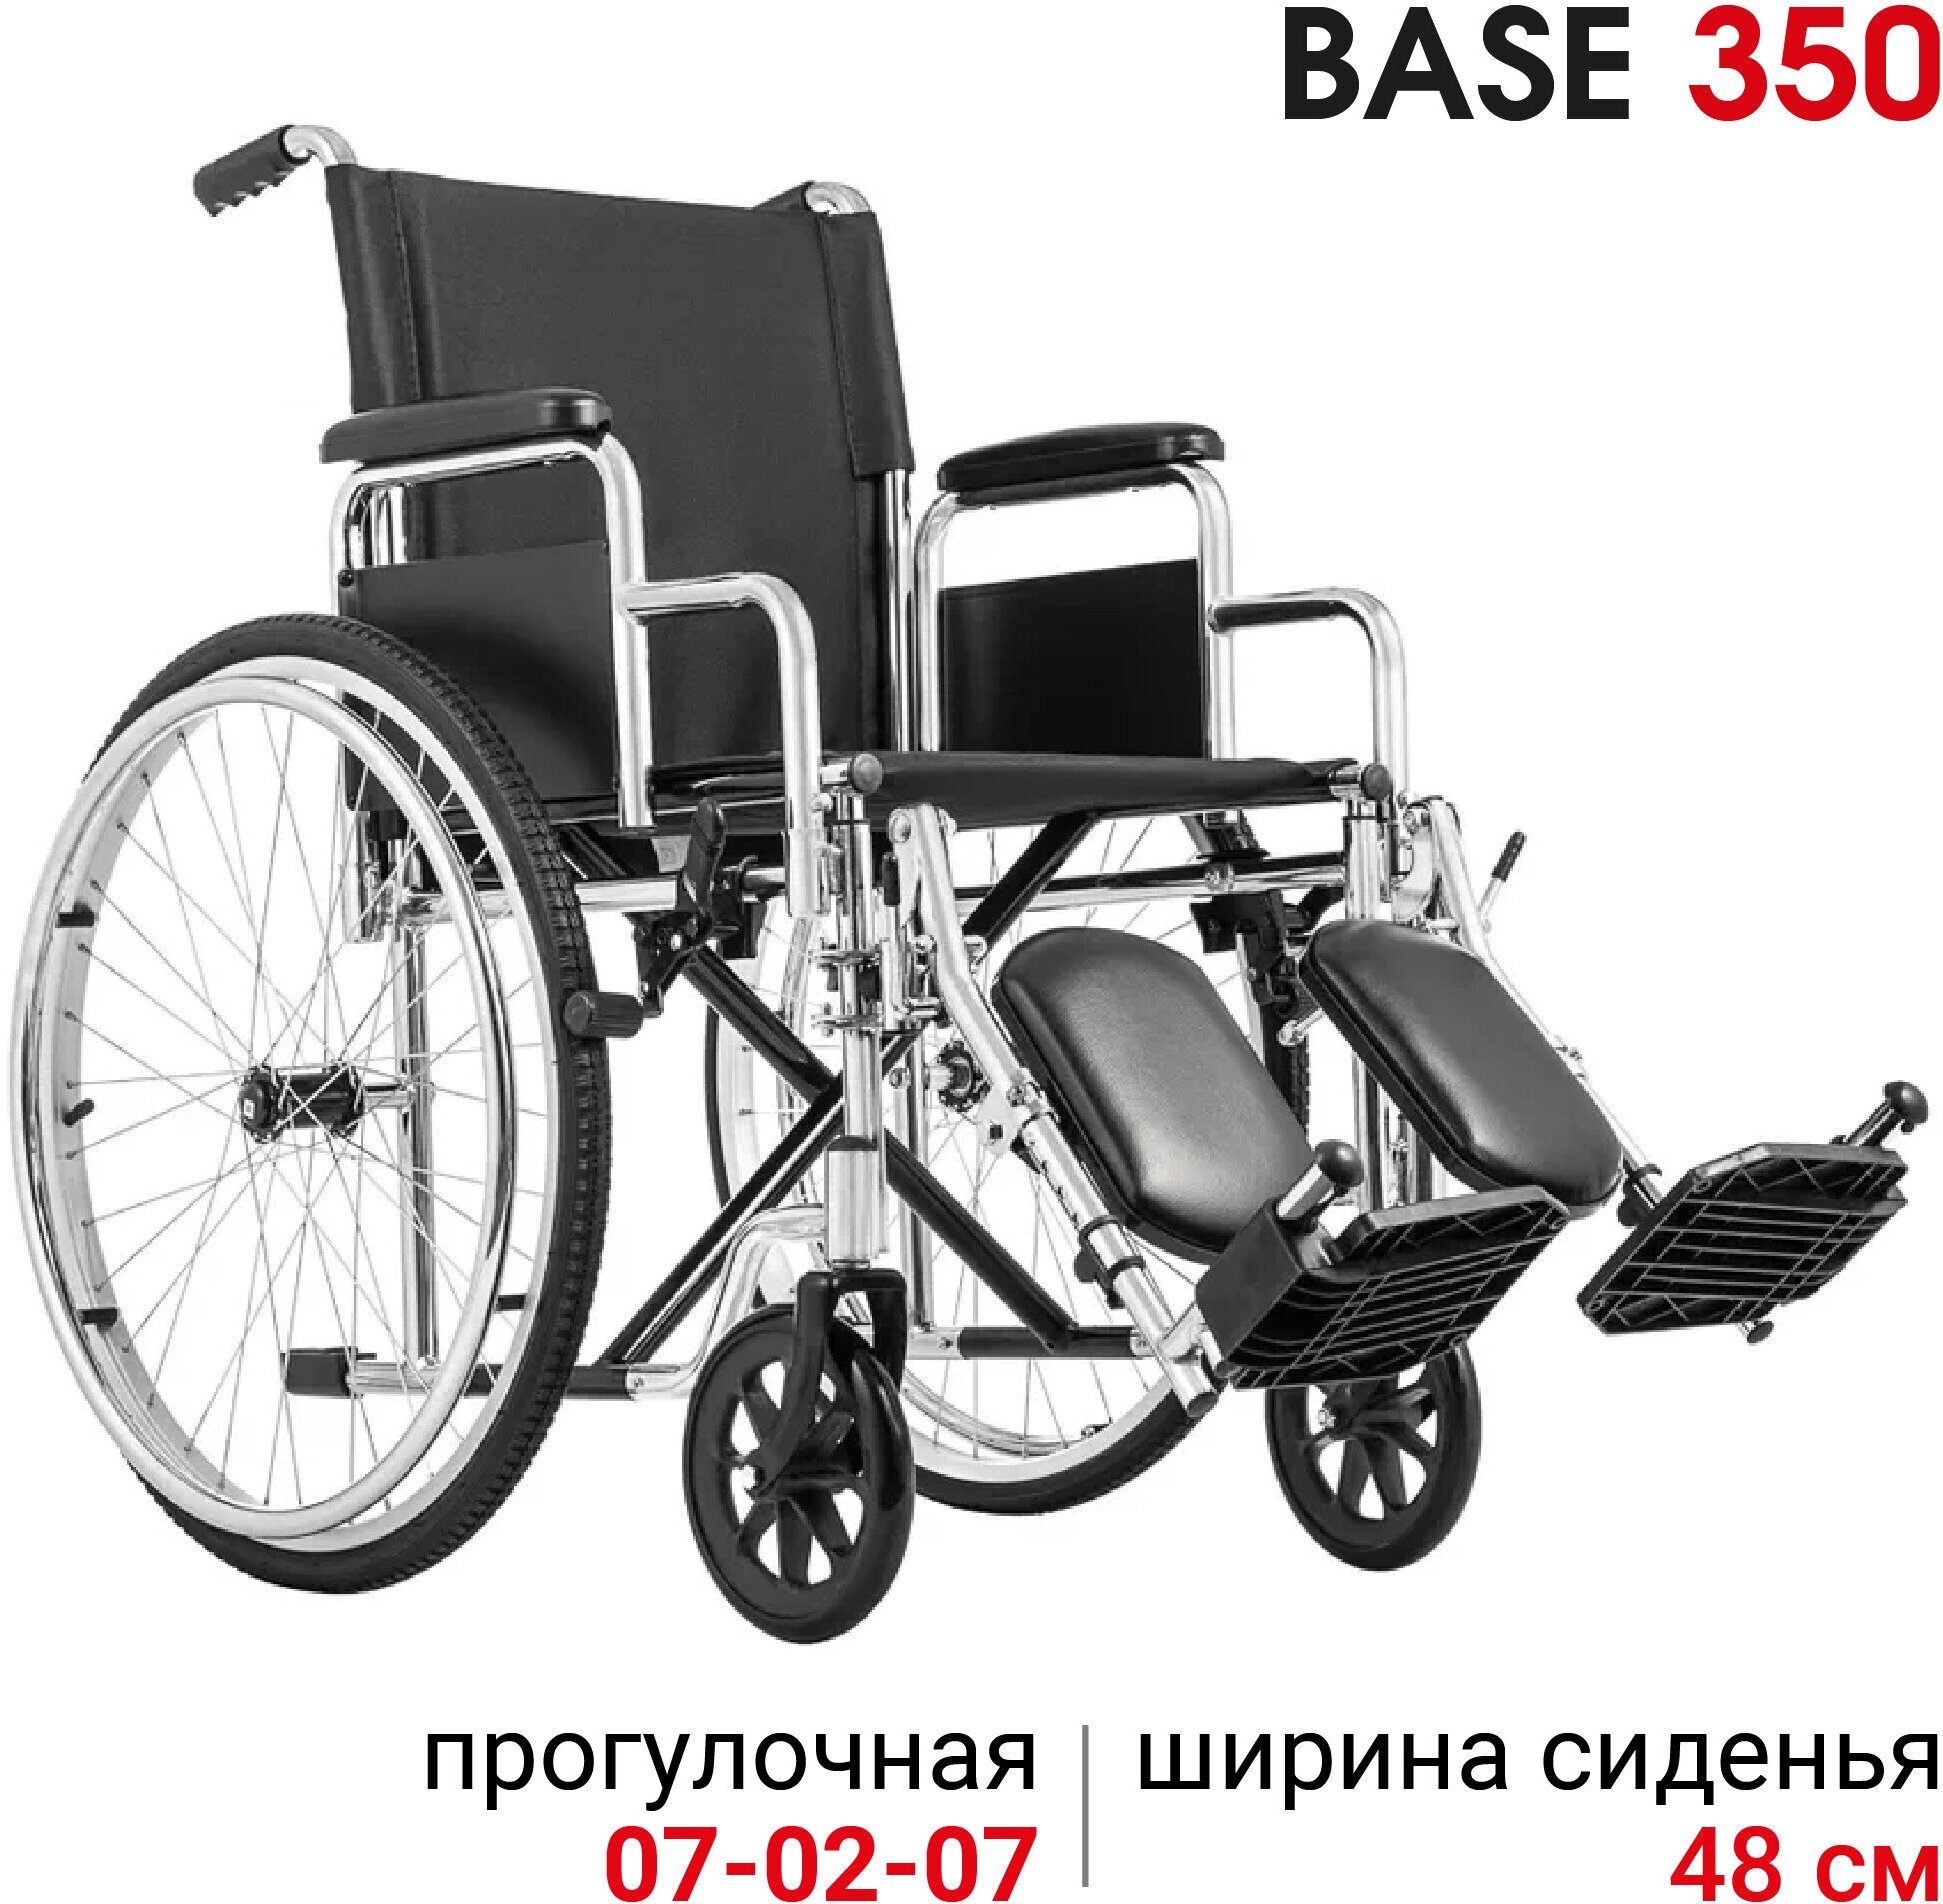 Кресло-коляска Ortonica Base 150/ Base 350 48PU складное с регулируемыми подножками ширина сиденья 48 см передние литые задние пневматические колеса